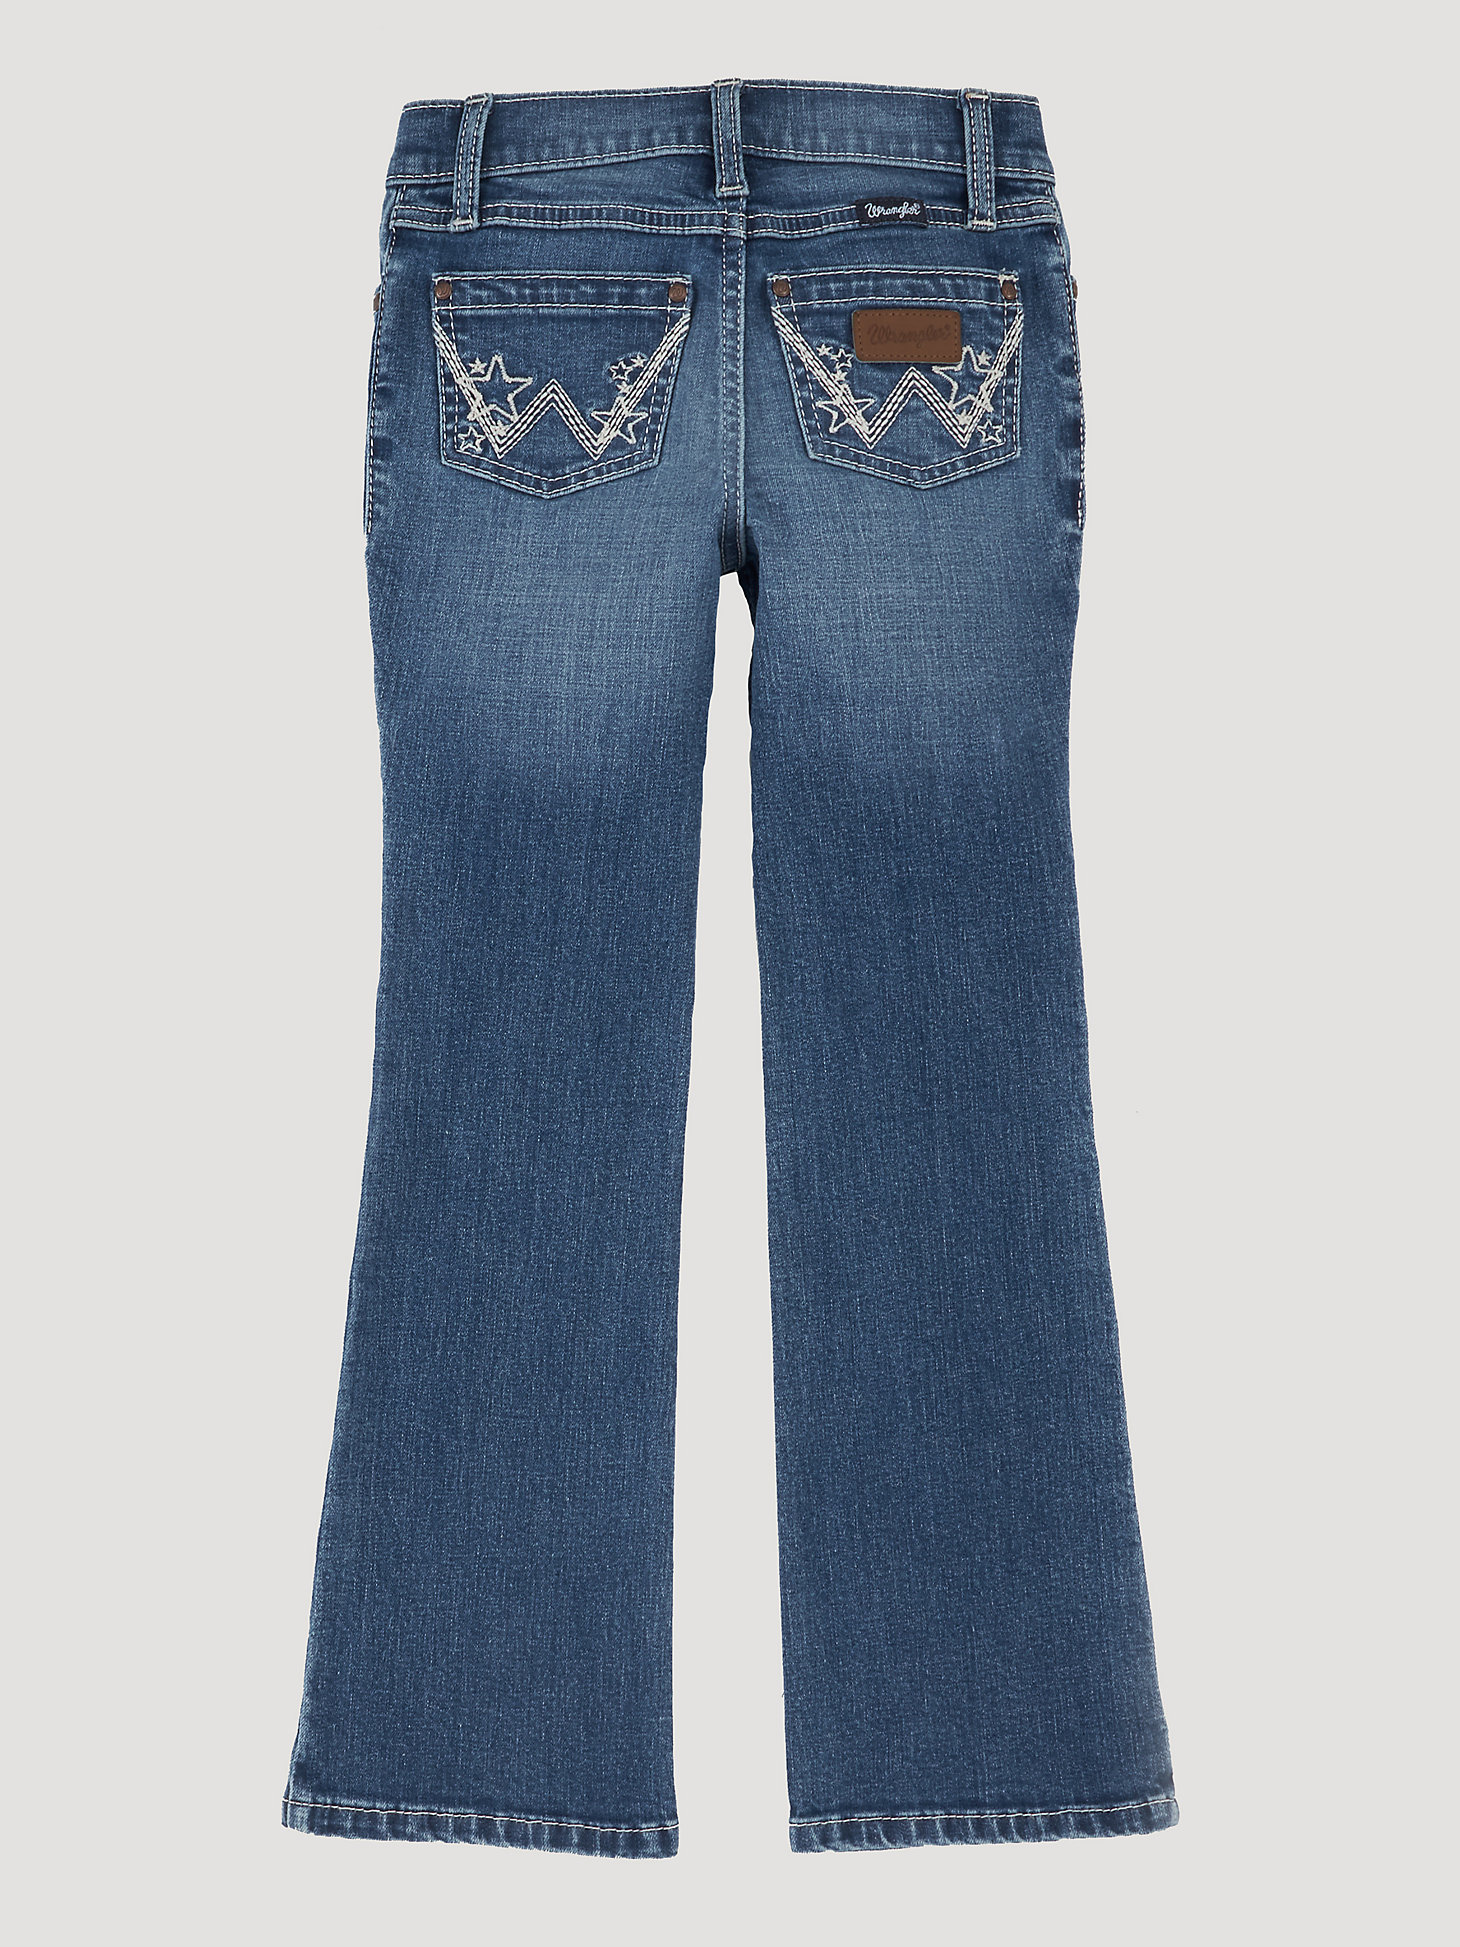 Girl's Wrangler® Premium Patch® Jean (4-14) in Dakota alternative view 1